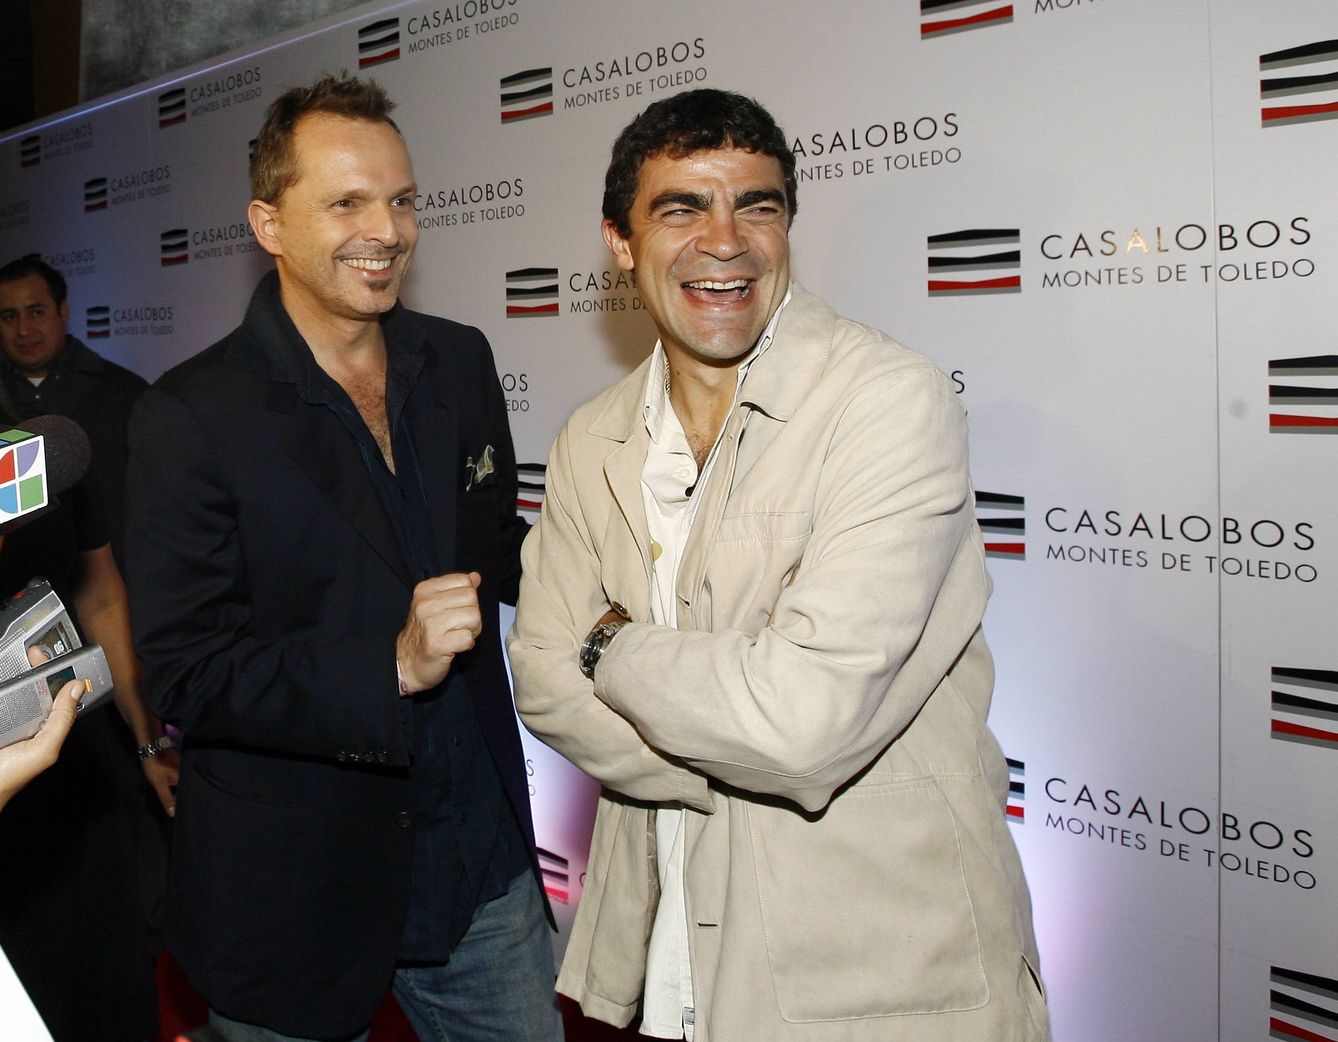 Miguel Bosé y Manolo Sanchís en 2007 cuando empezaron sus aventuras empresariales (Gtres)